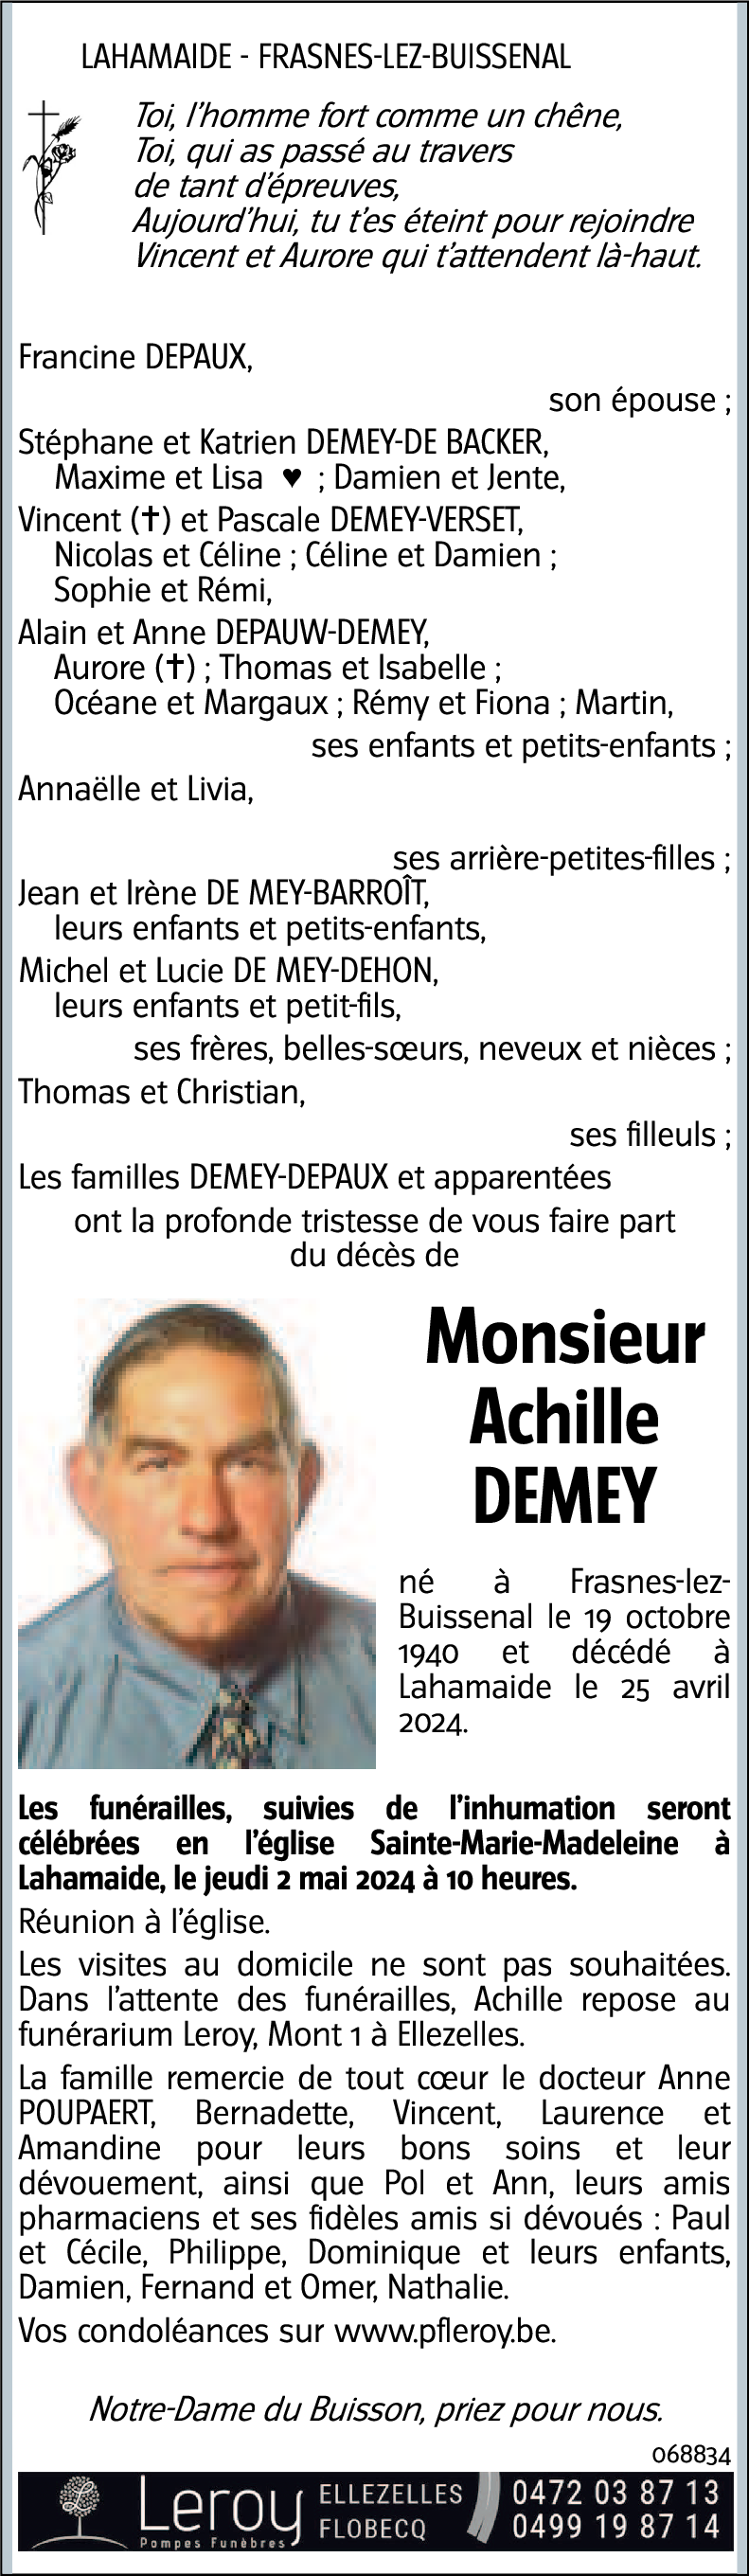 Achille Demey